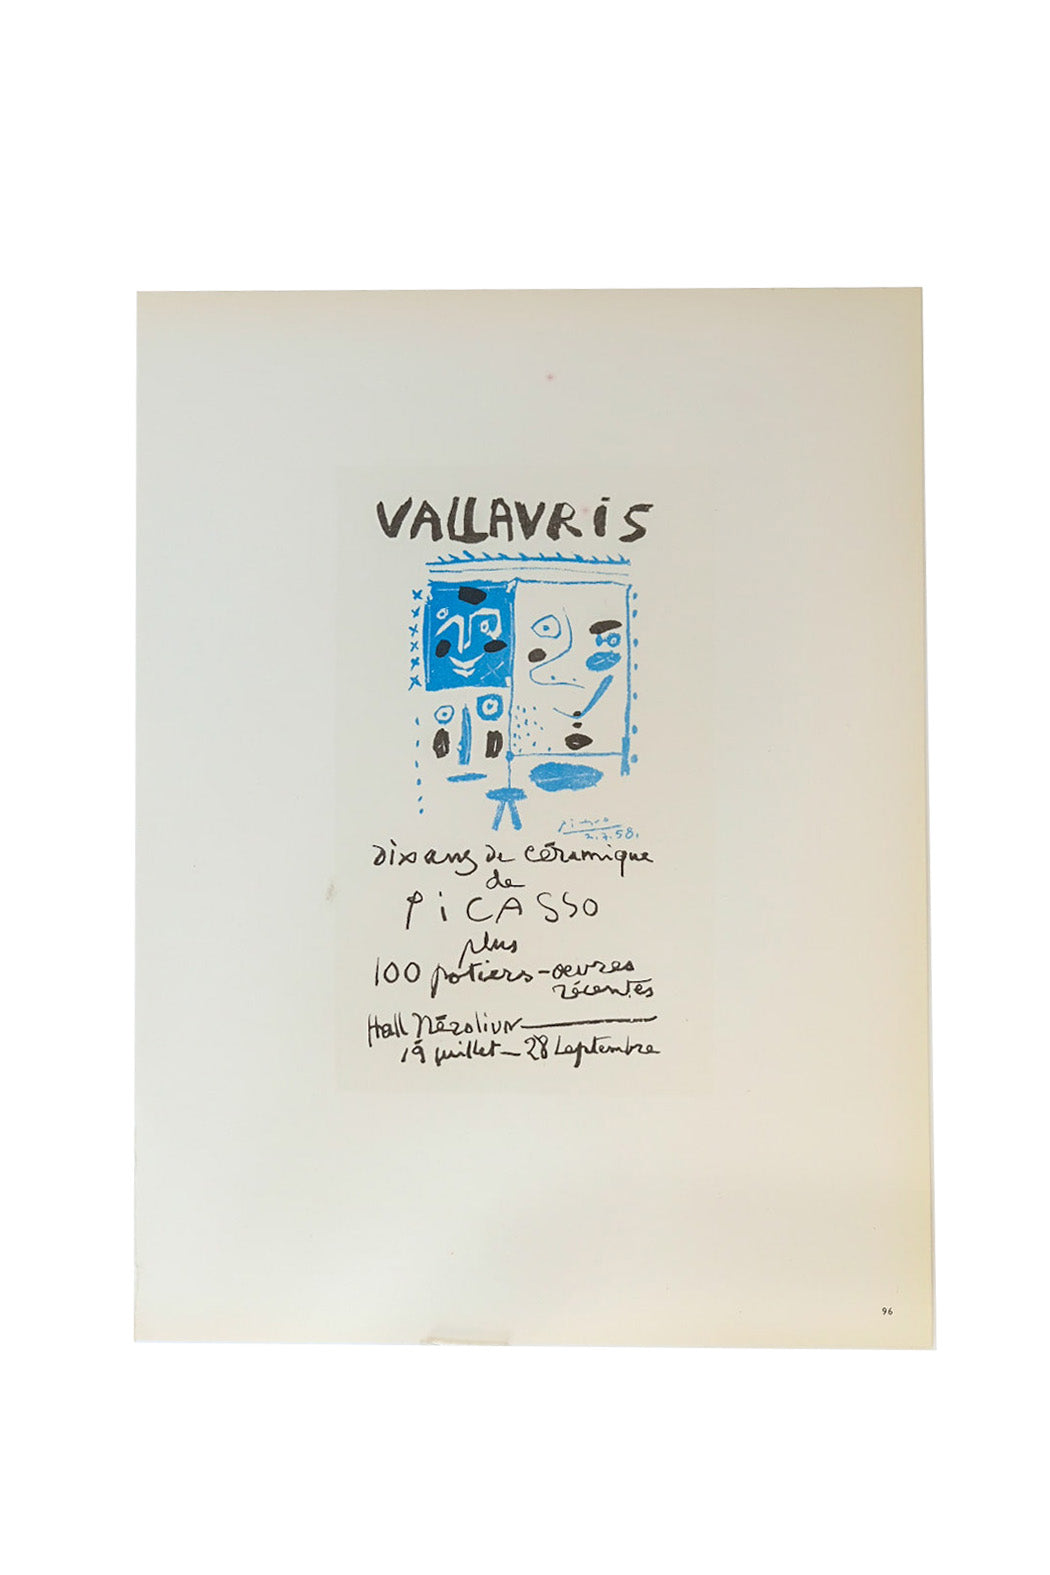 Pablo Picasso Vallavris Dix ans de Cèramique Page 96